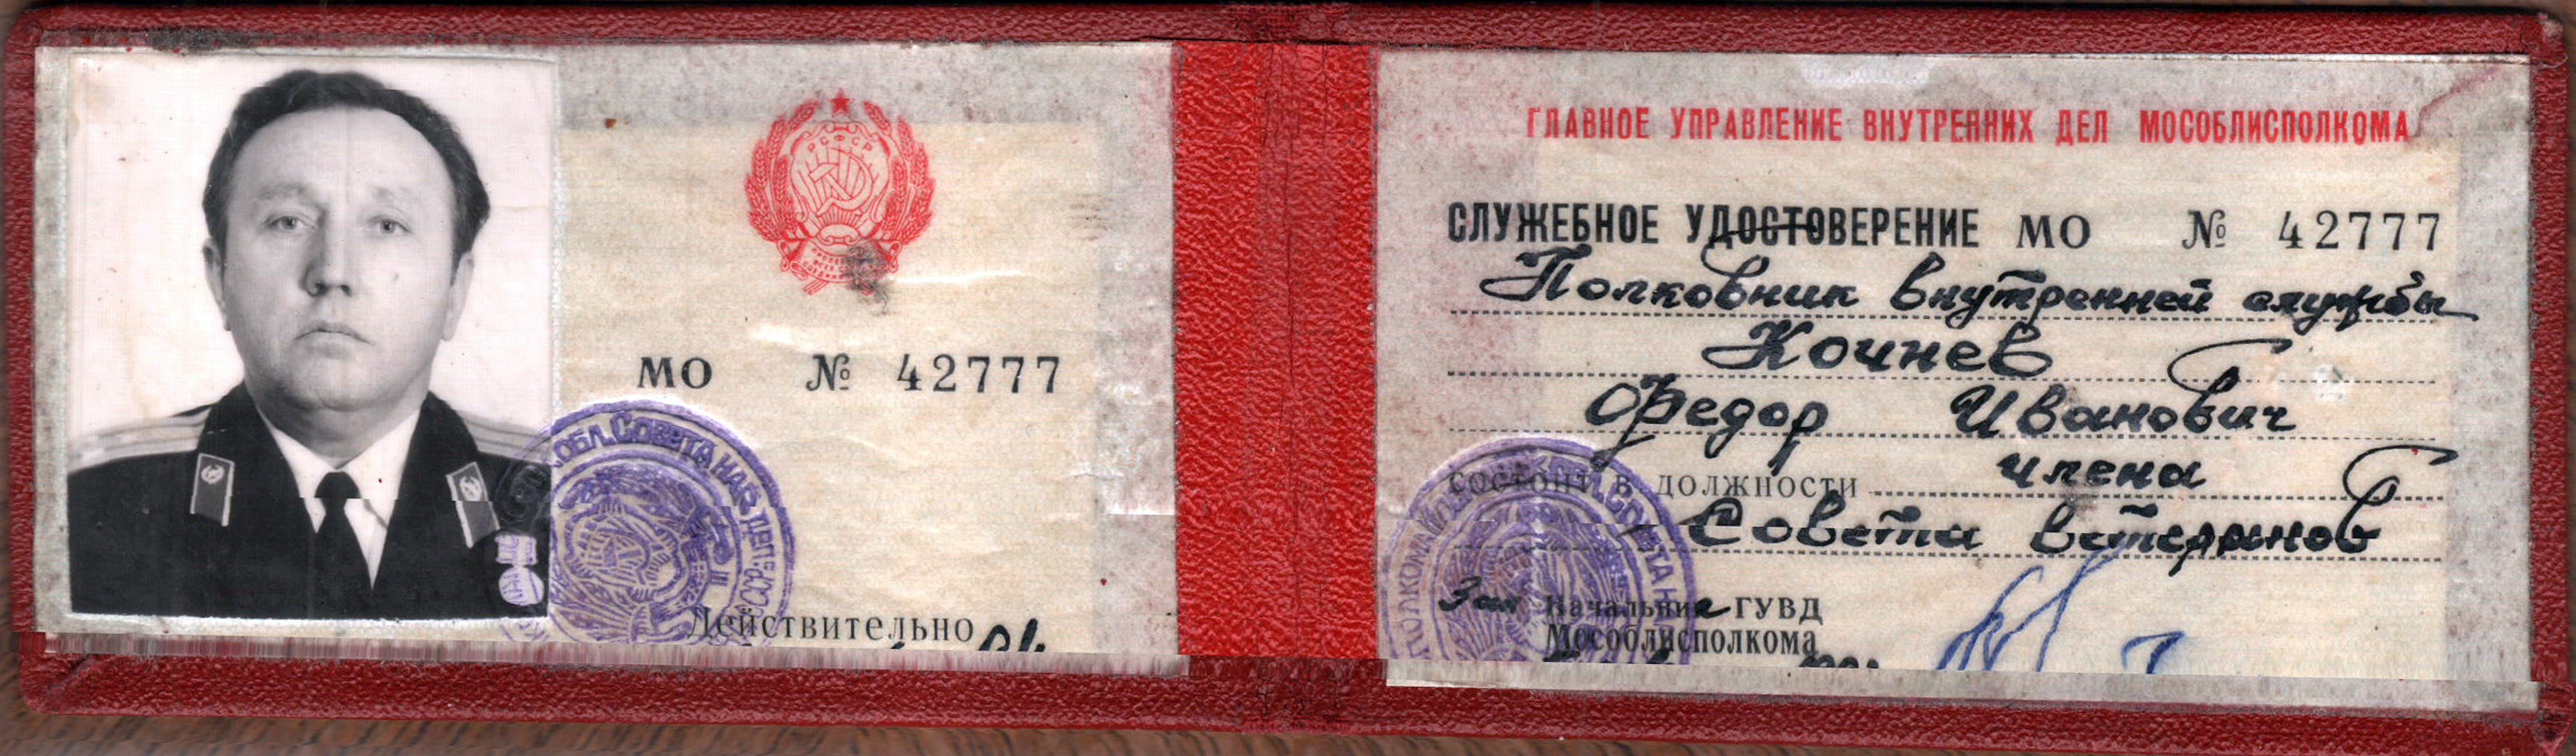 Удостоверение МВД СССР